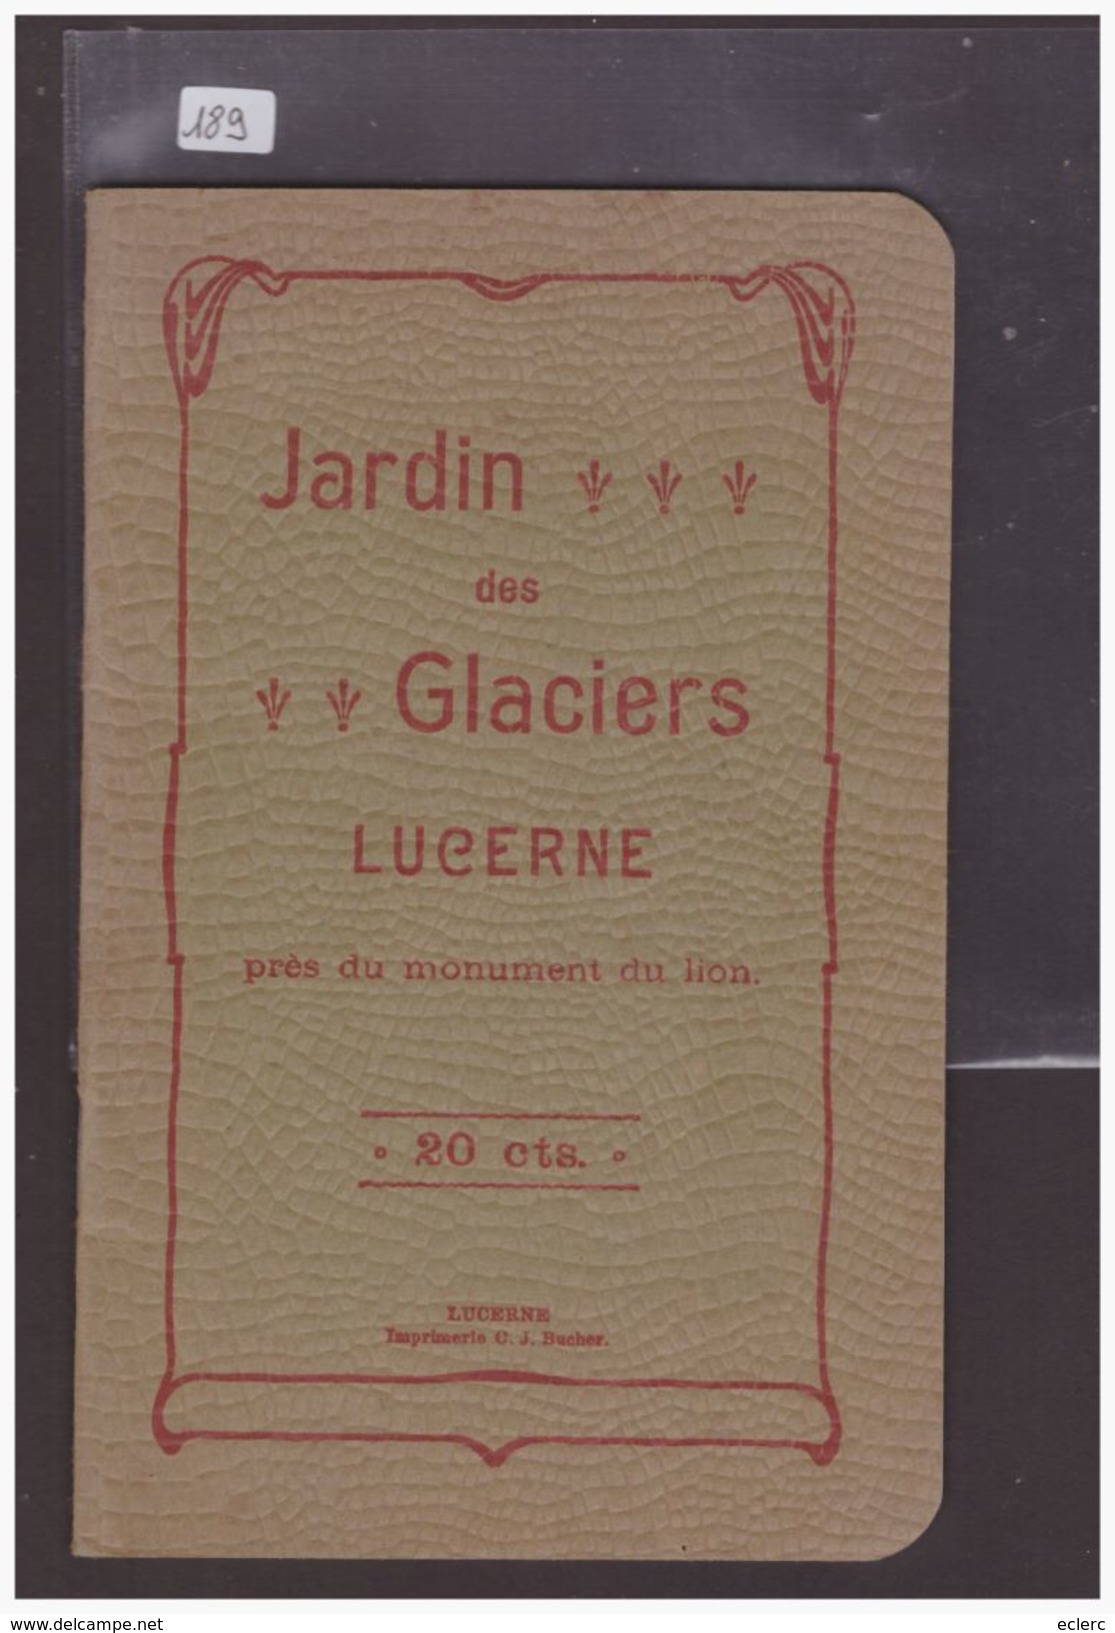 LUZERN SUISSE - JARDIN DES GLACIERS - LIVRET 32 PAGES AVEC ILLUSTRATIONS - TB - Tourism Brochures